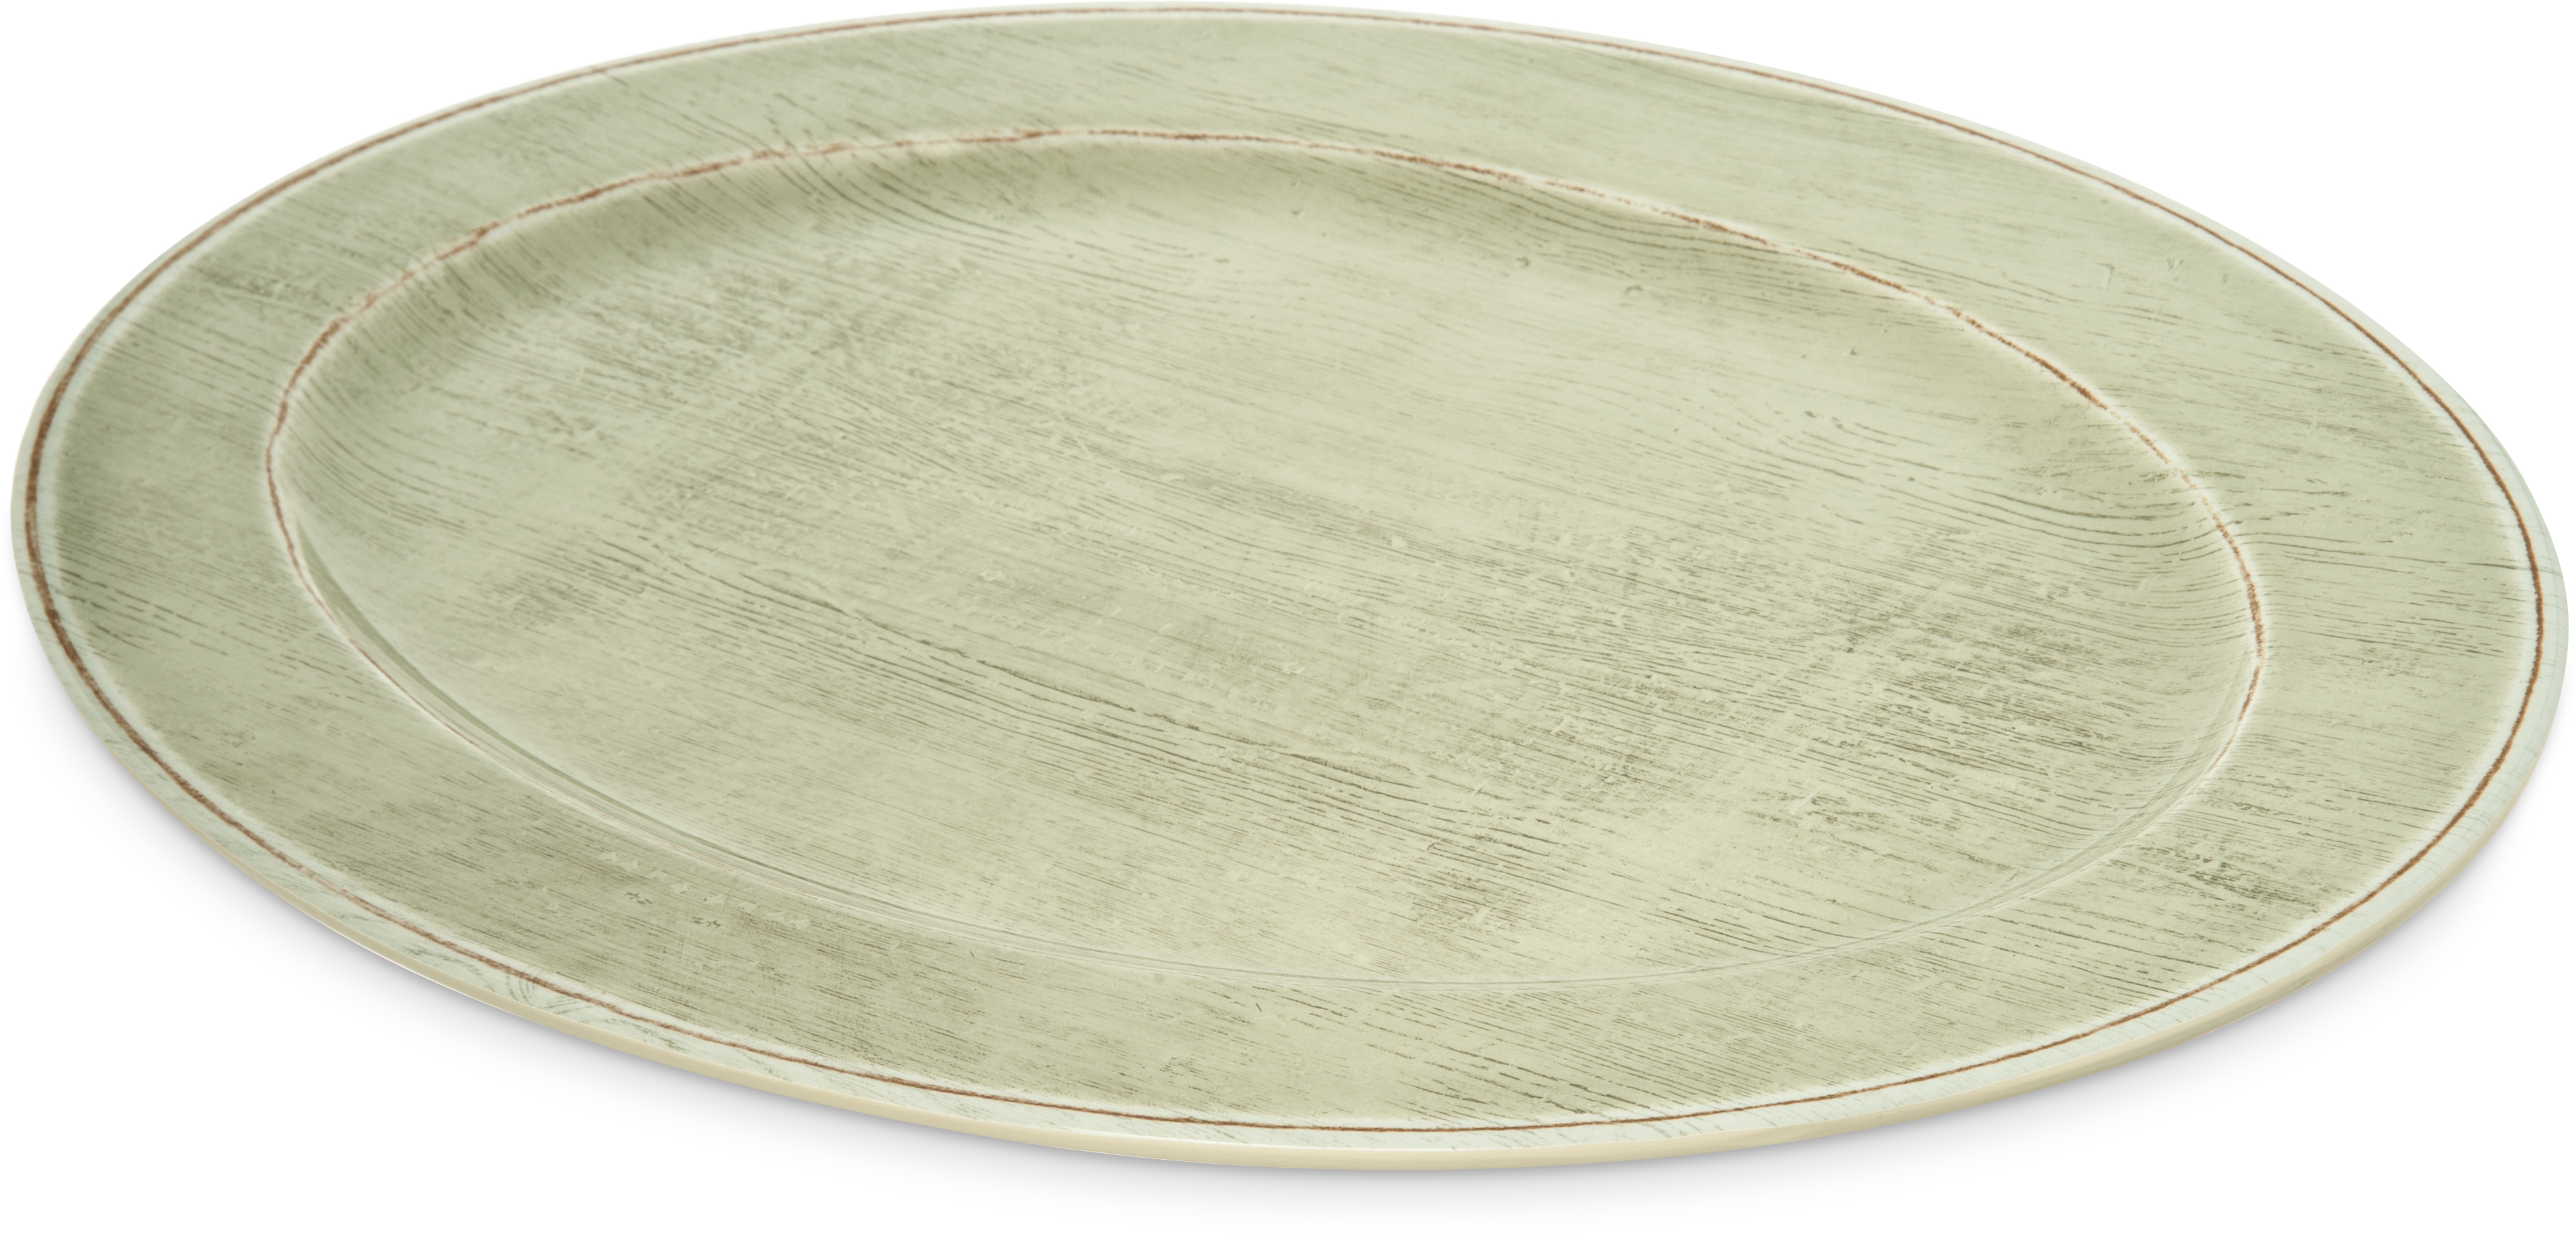 Melamine Oval Platter Tray 20 x 14 - Jade